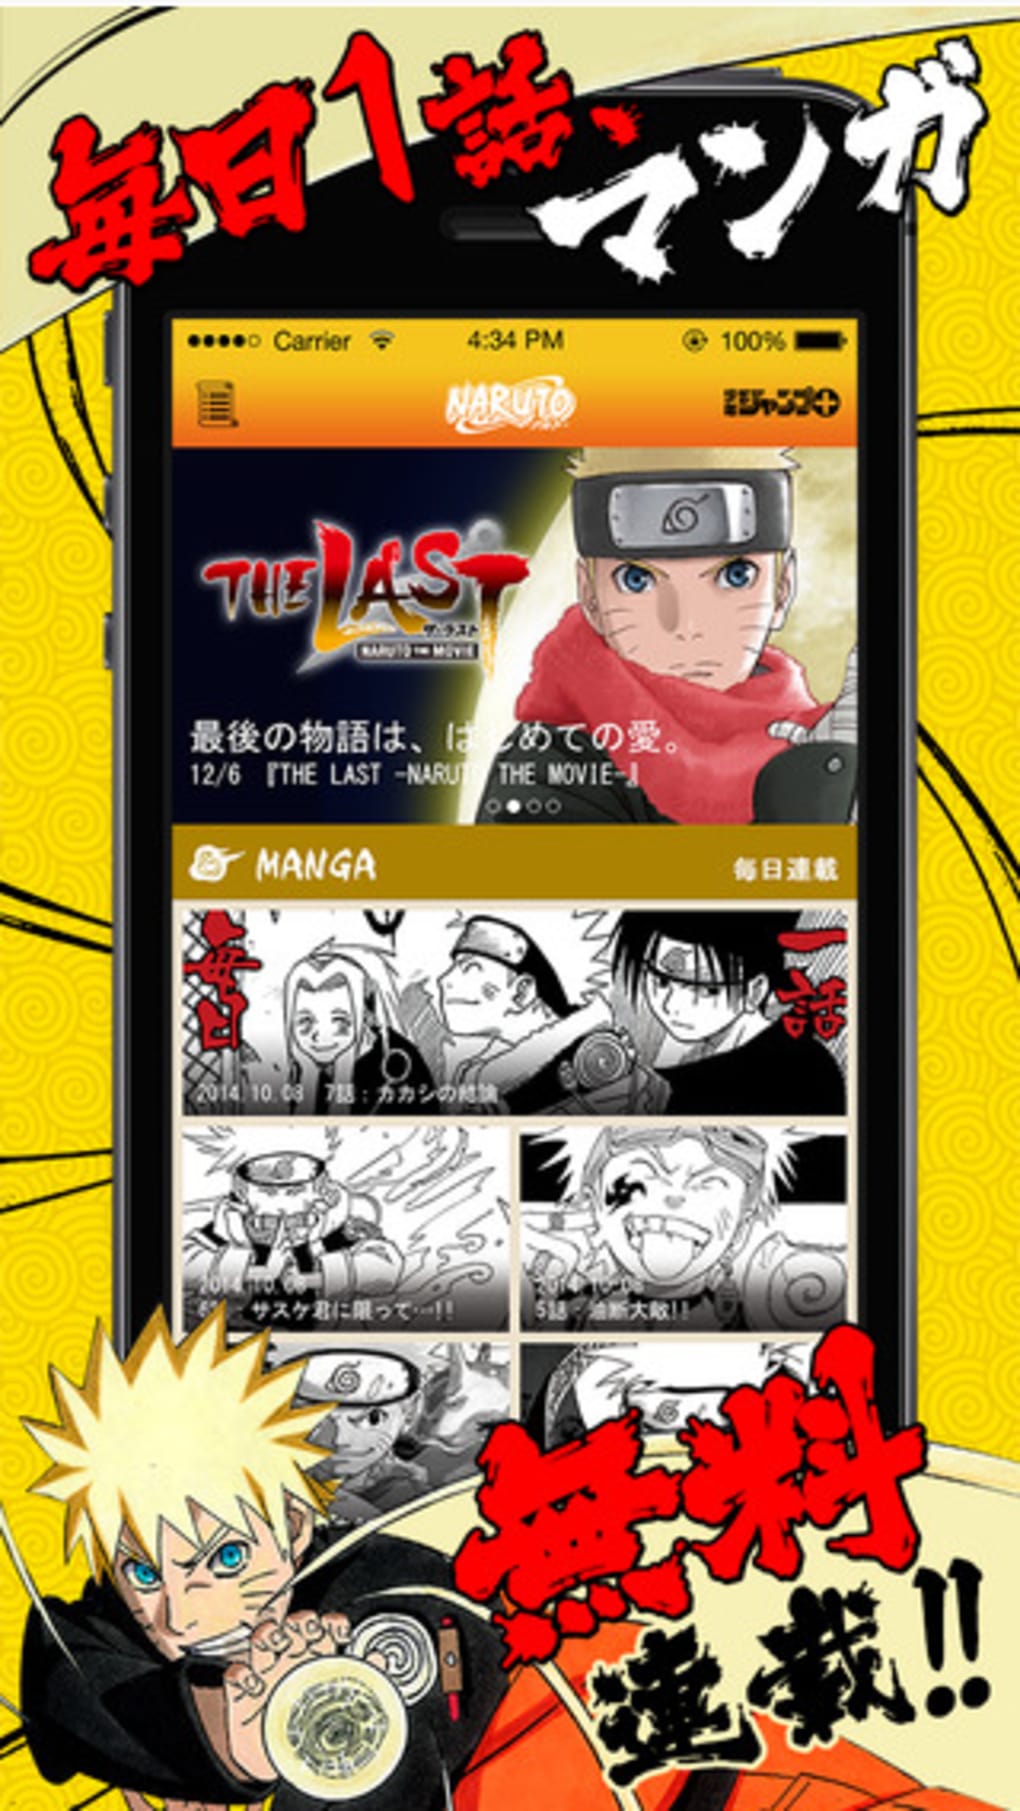 Naruto ナルト 公式漫画アプリ毎日15時にもらえるチャクラで全話読破 For Android 無料 ダウンロード